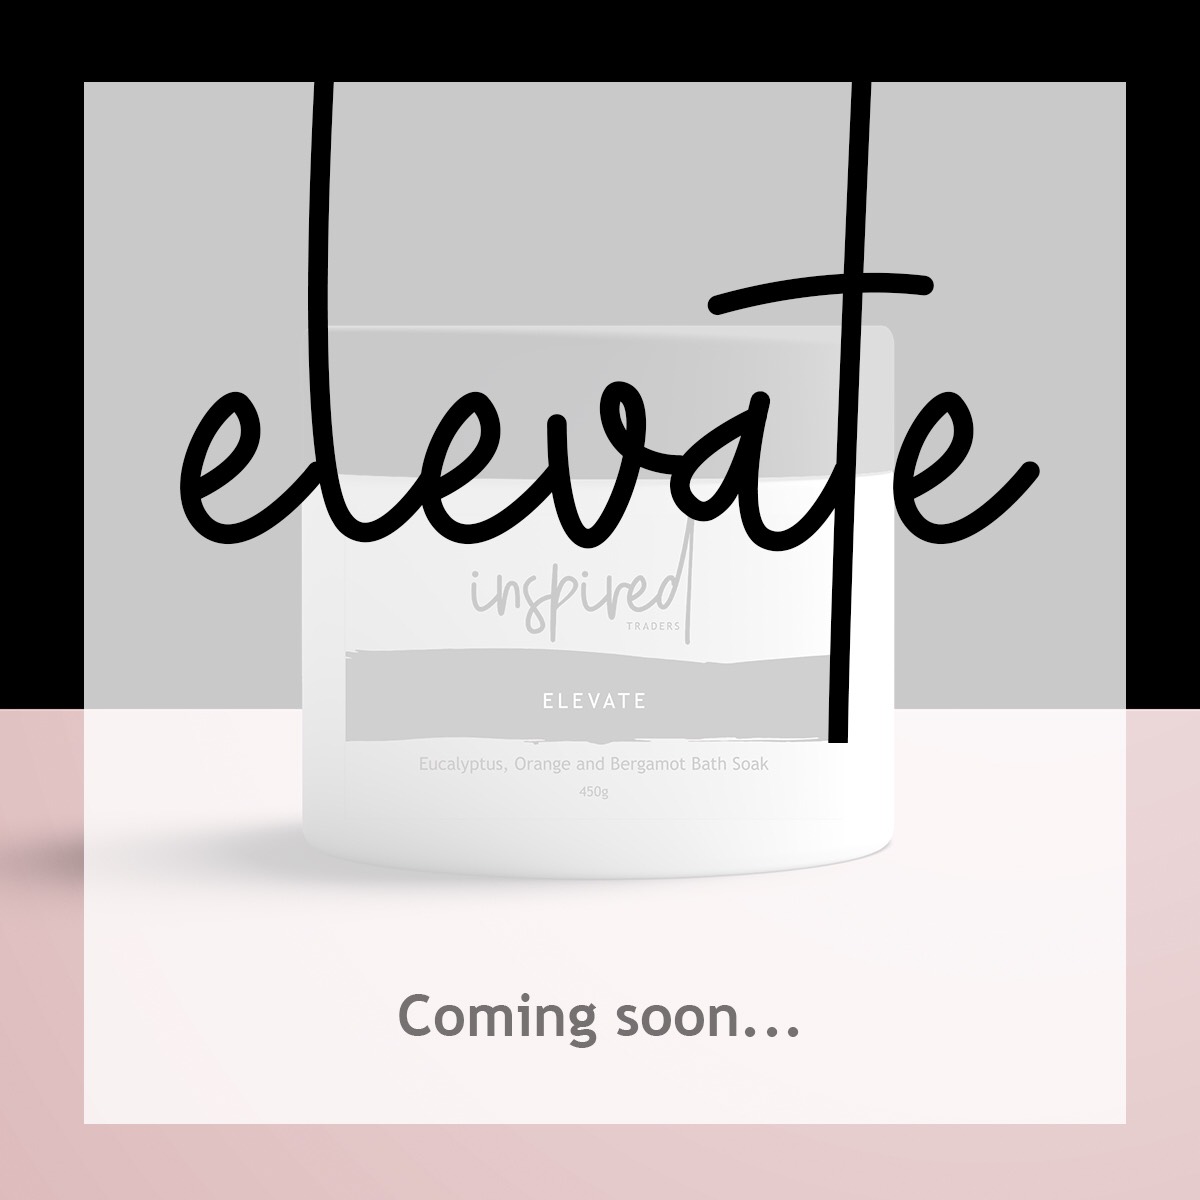 Elevate ... coming soon